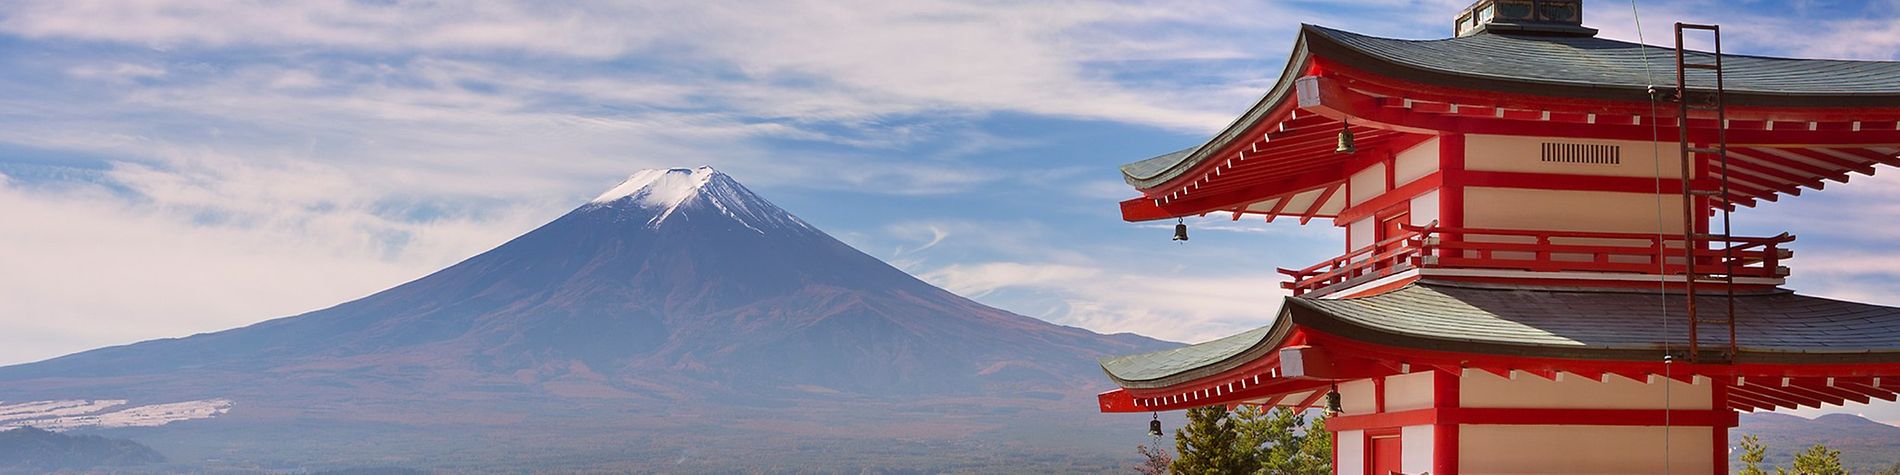 Der Berg Fudschijama in Japan, im Vordergrund ein typisch japanischer Tempel